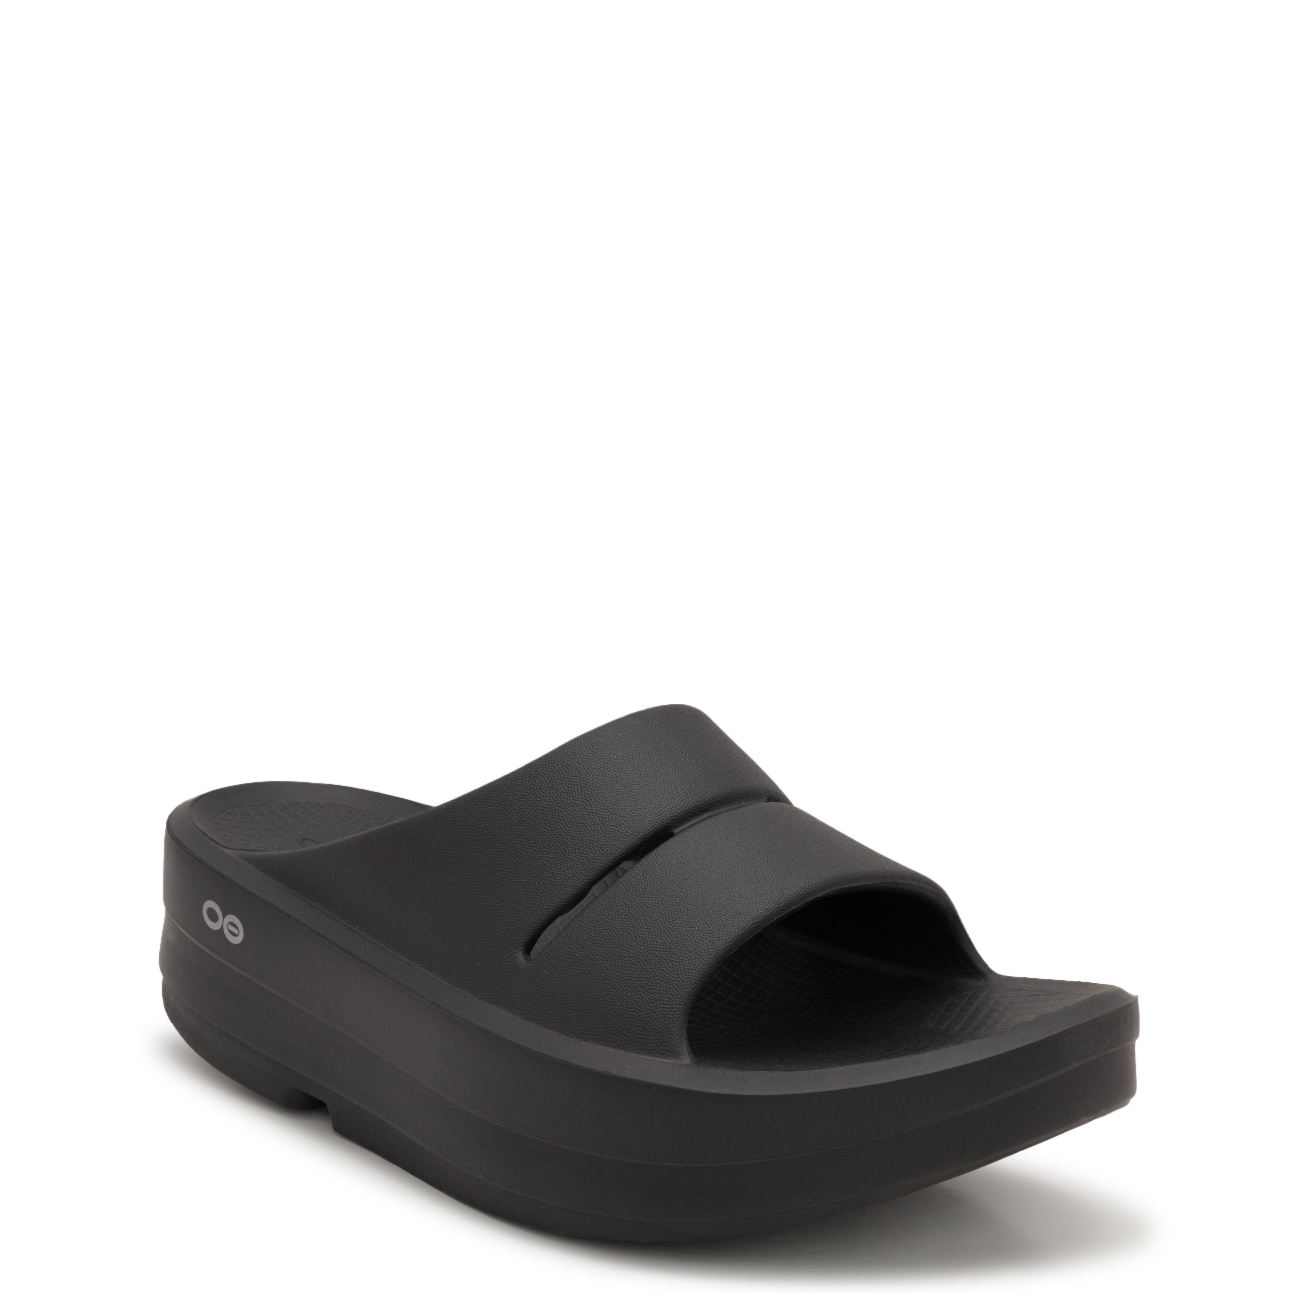 Women's OOmega OOahh Luxe Platform Slide Sandal